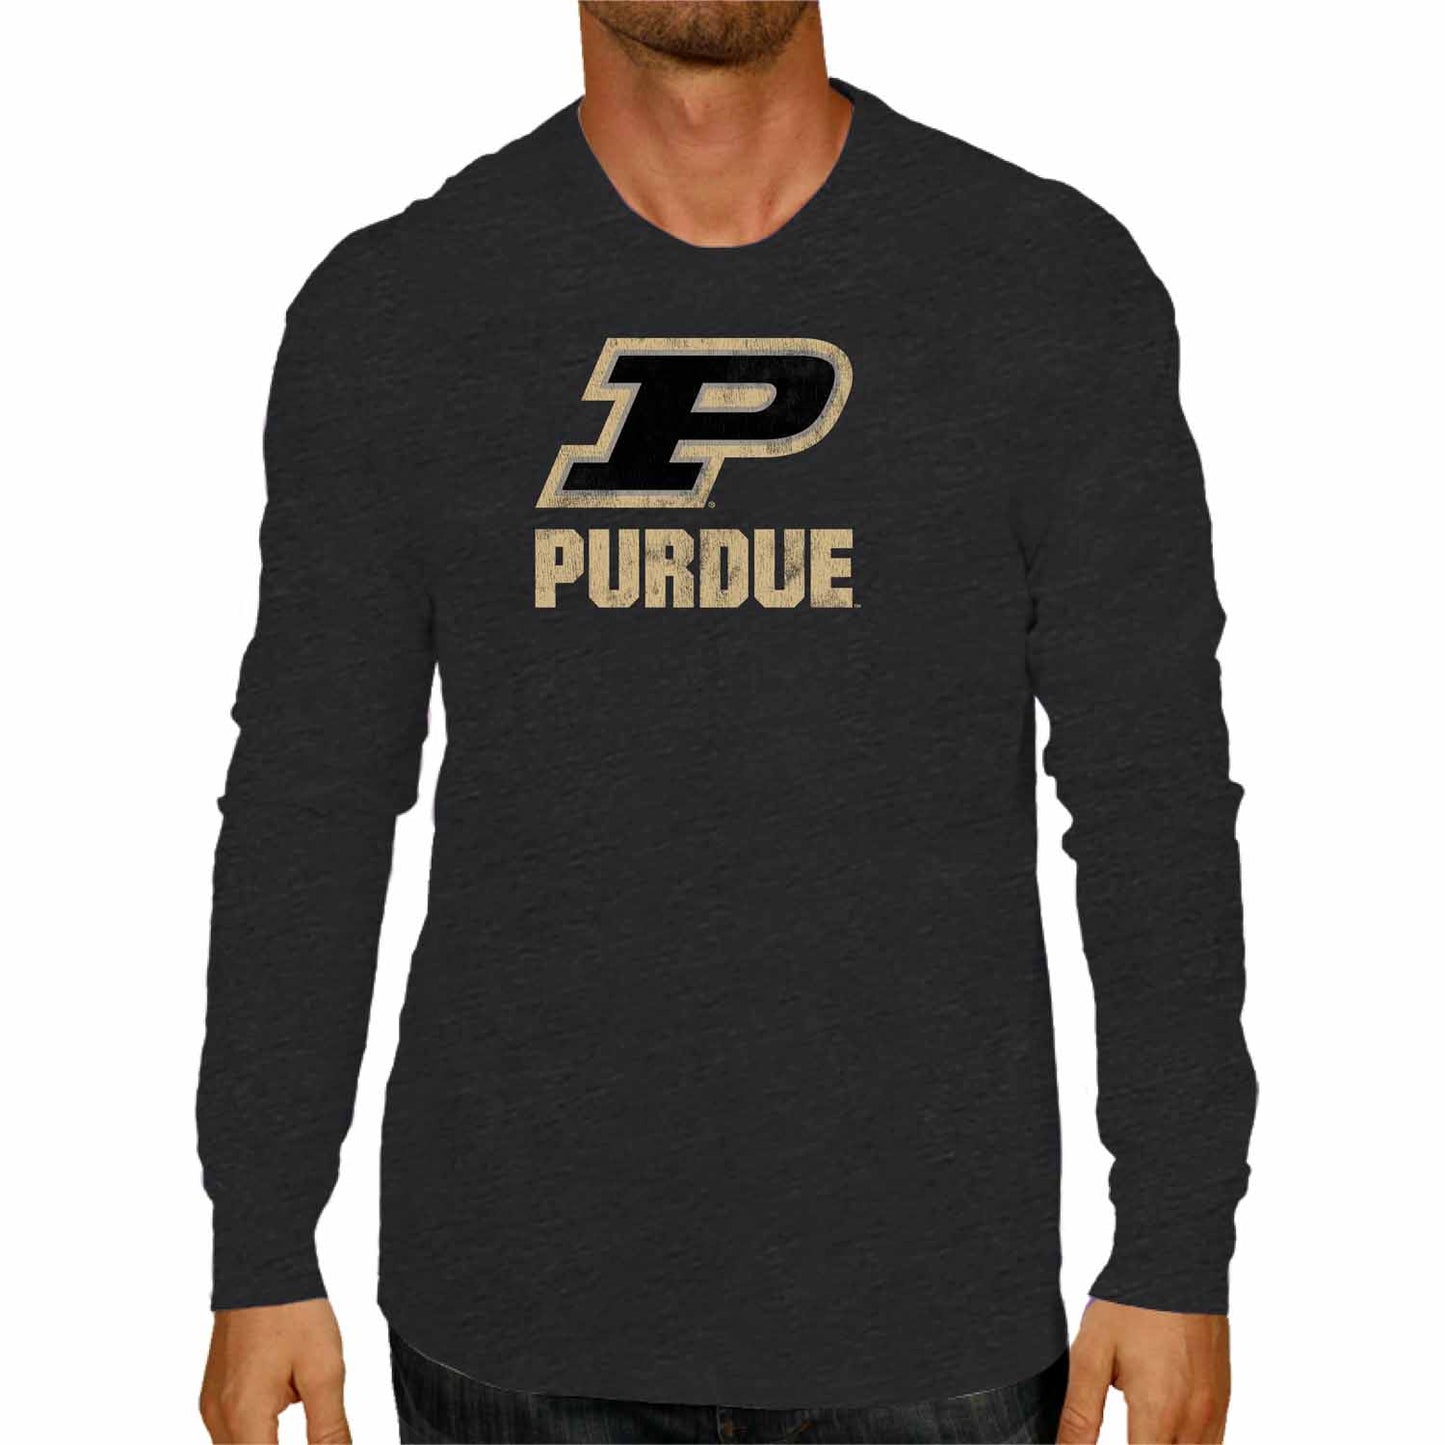 Purdue Boilermakers NCAA MVP Adult Long-Sleeve Shirt - Black